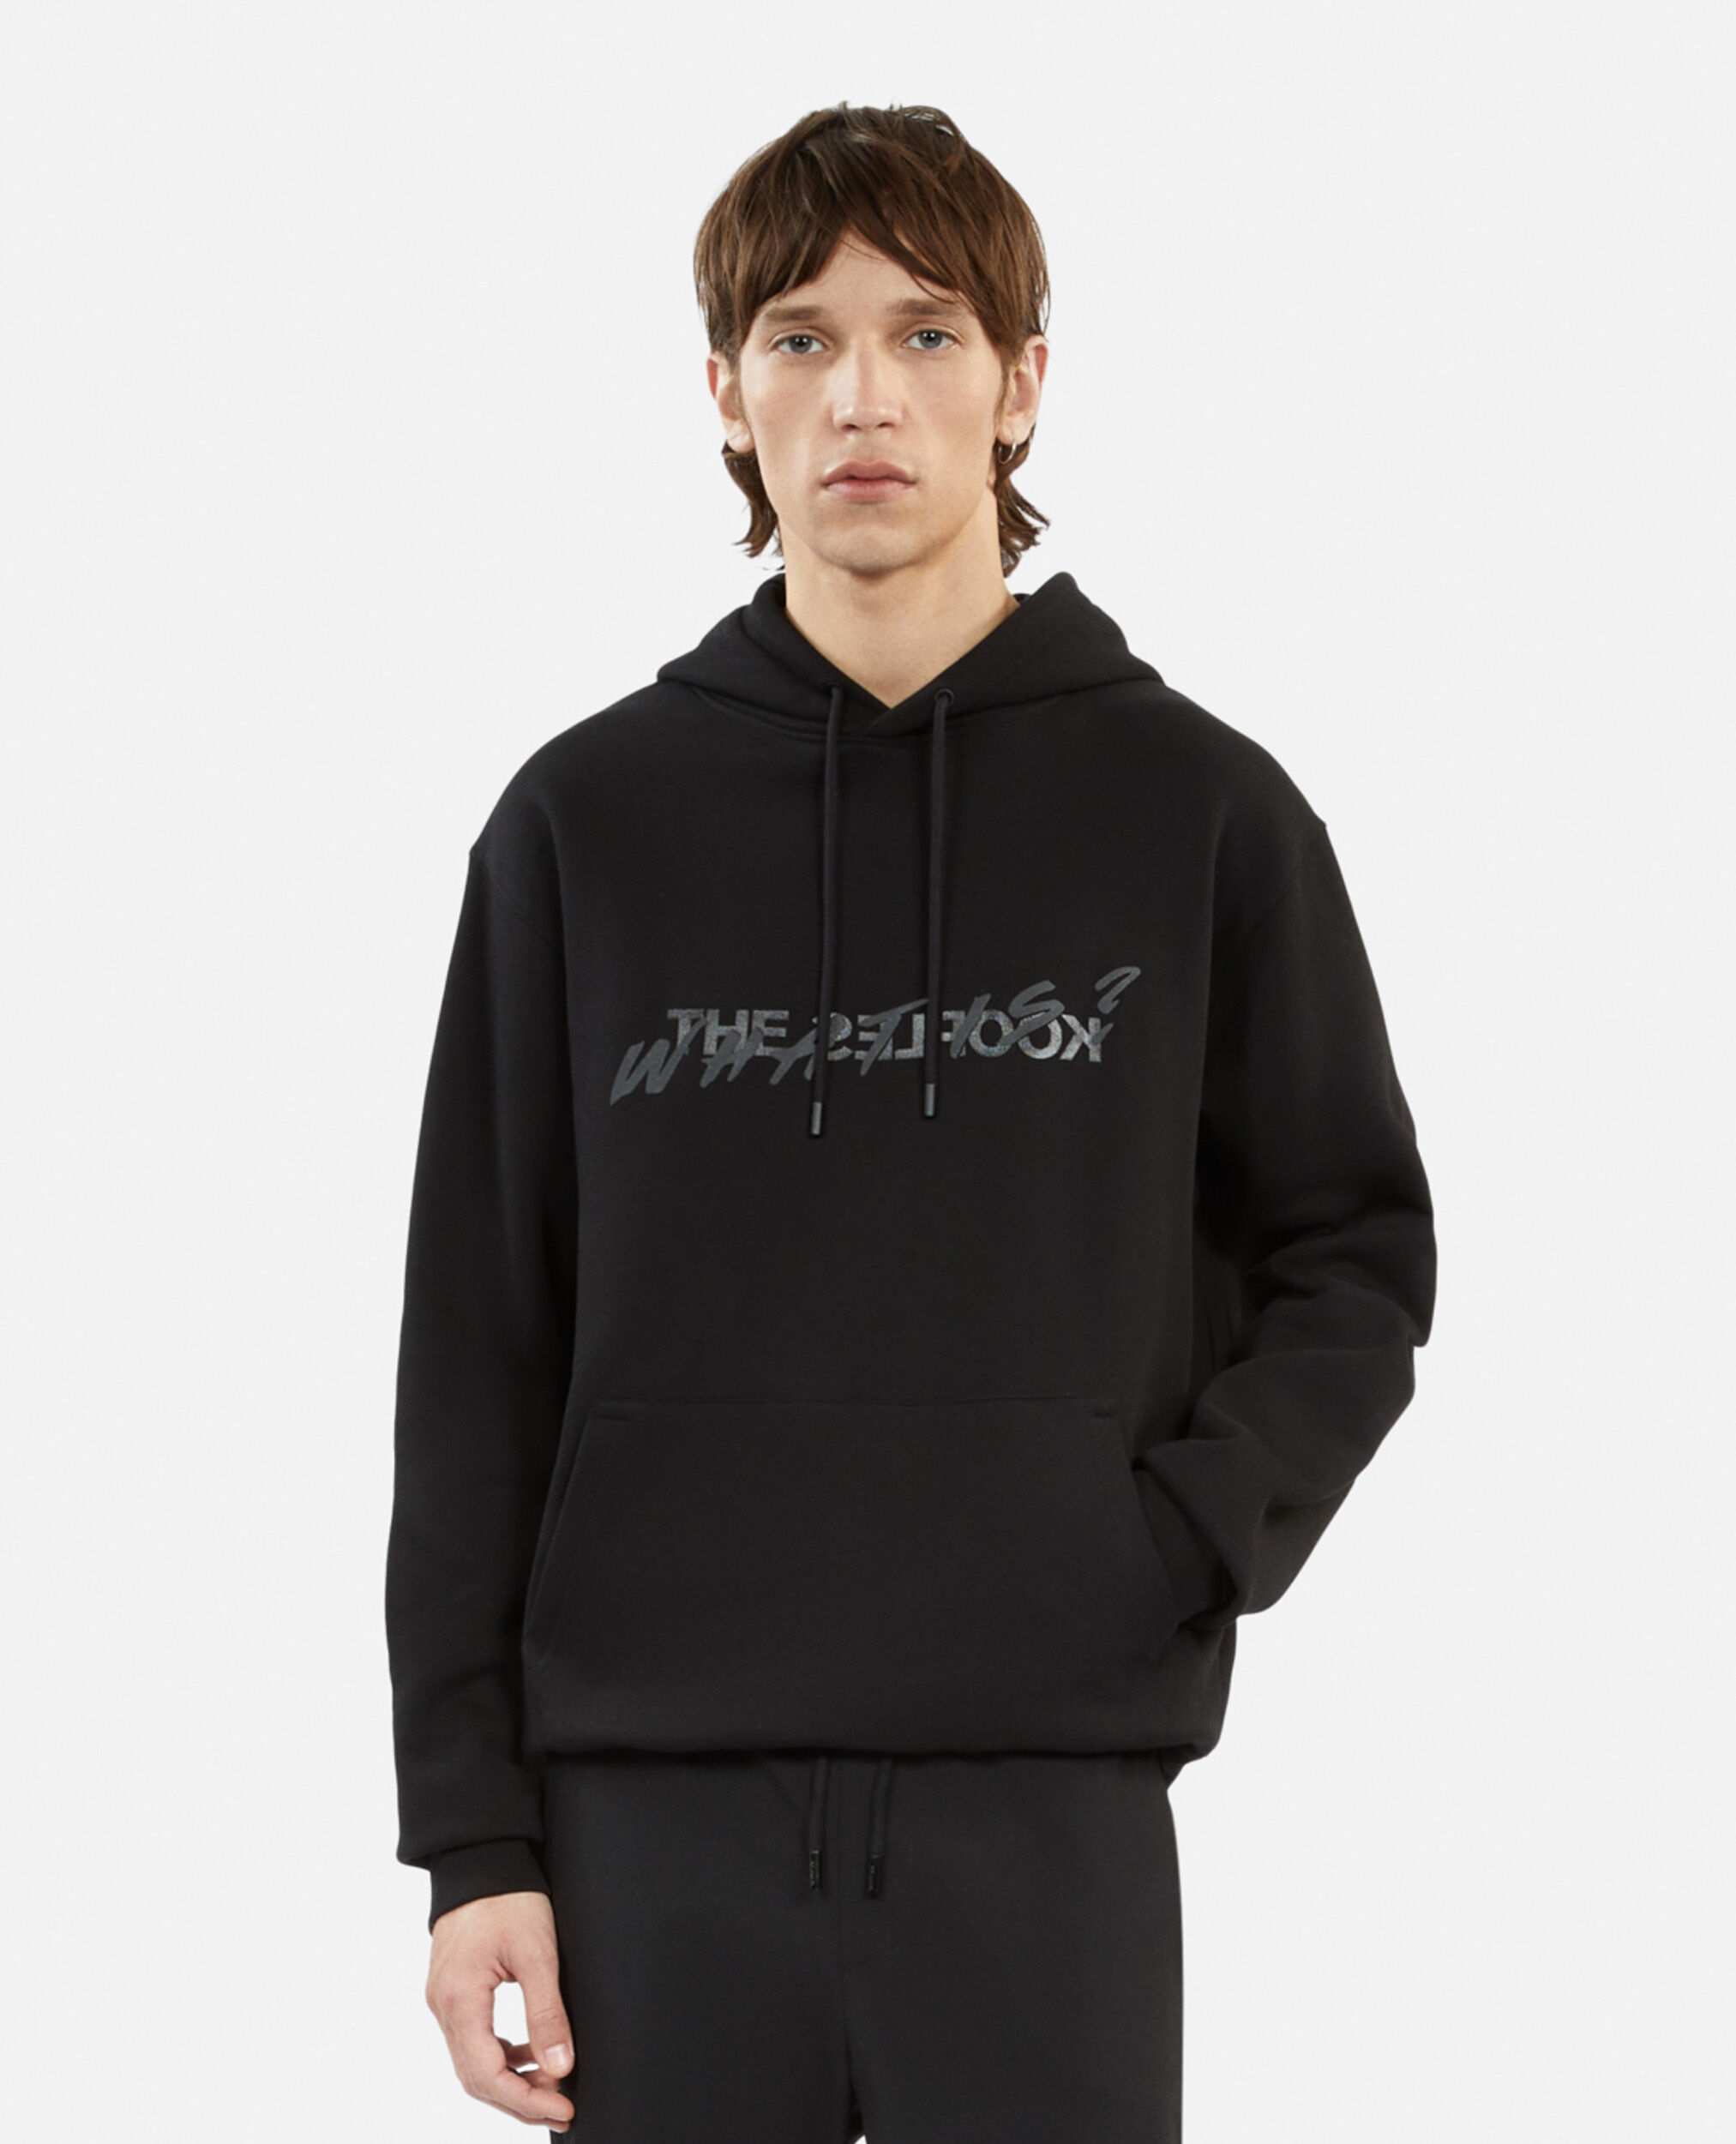 Men's Black What is hoodie, BLACK, hi-res image number null